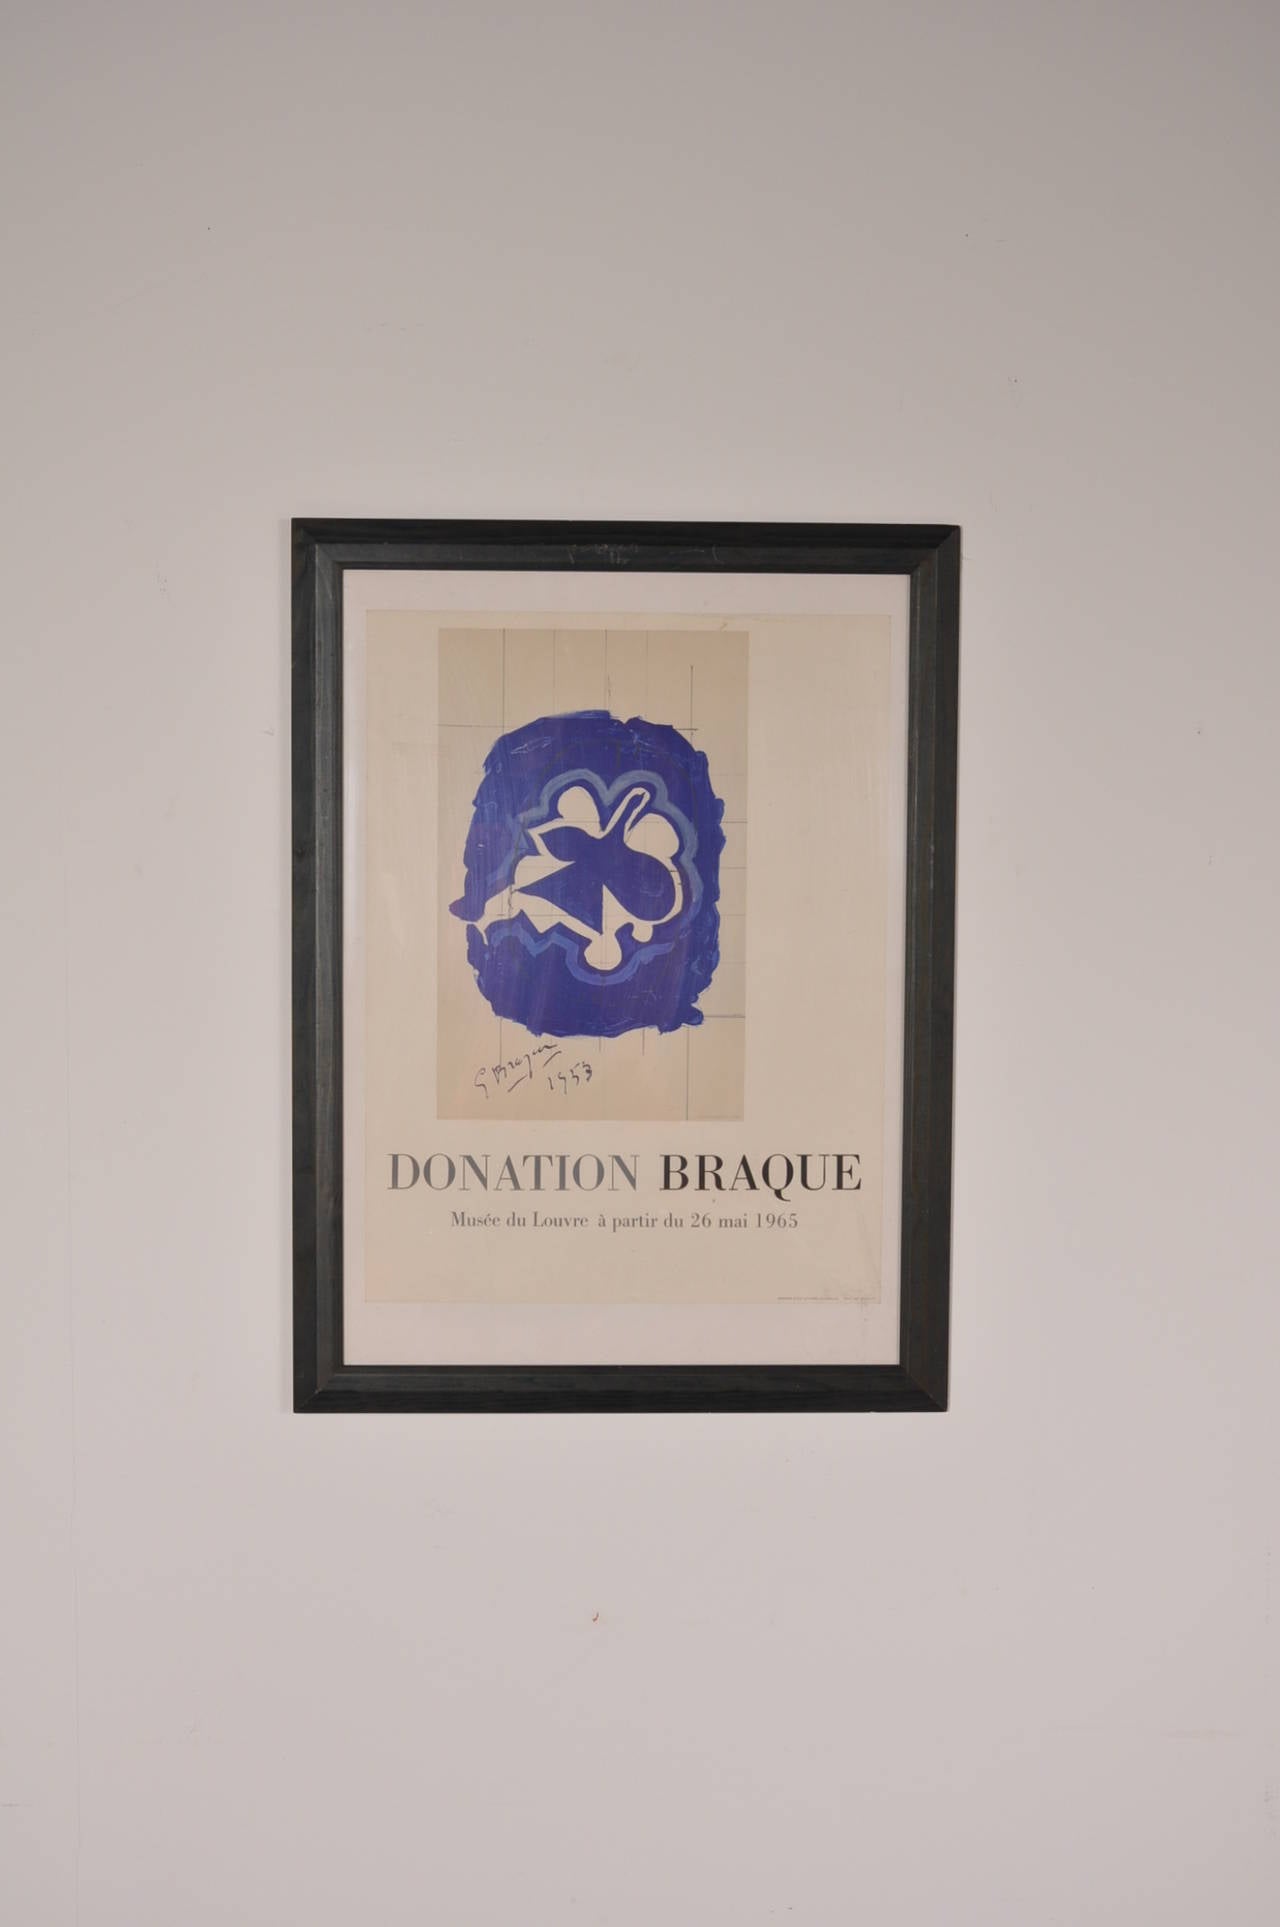 Lithographie de donation unique de George Braque, imprimée par Mourlot France en 1965.

Cette affiche lithographique rare a été créée pour une exposition d'œuvres au Musée du Louvre à Paris.

En bon état d'origine avec une usure mineure conforme